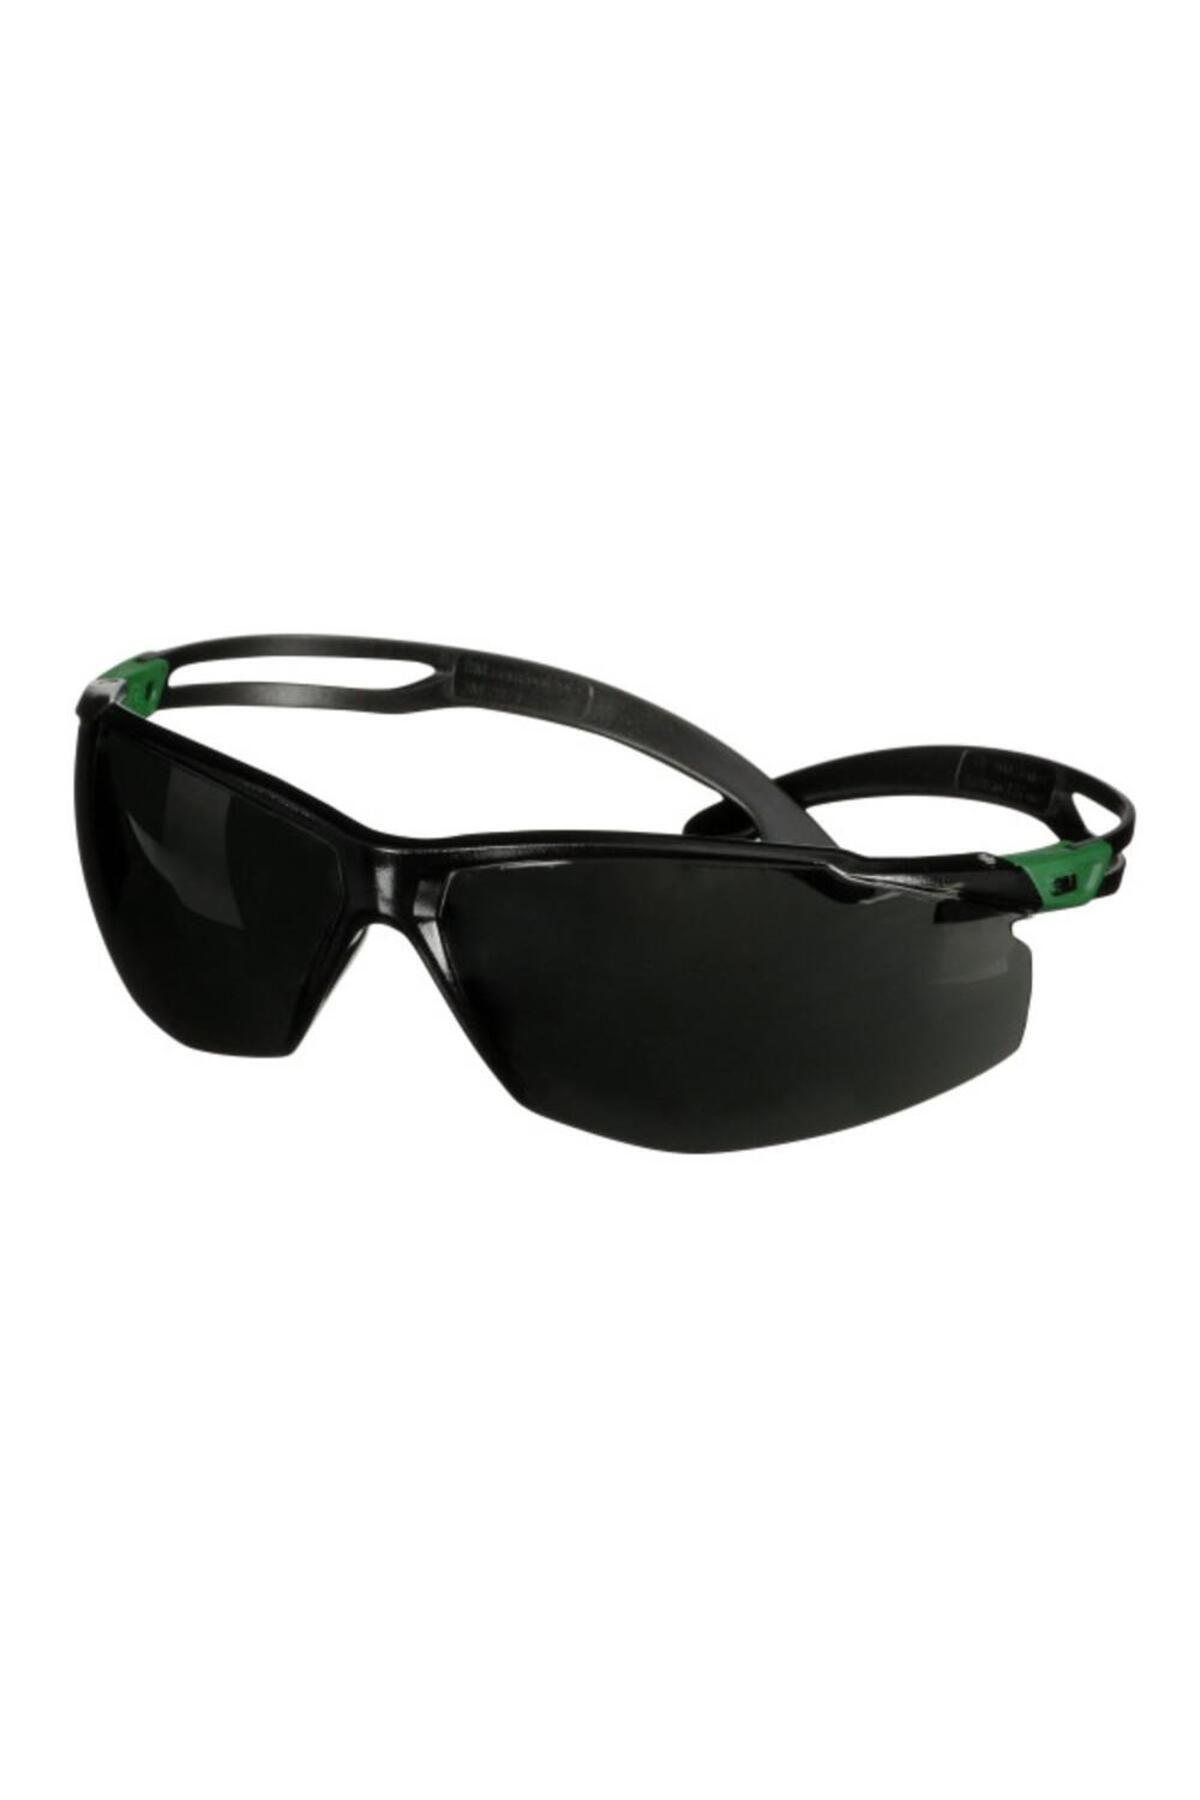 3M ™ Securefit™ 500 Yeşil/siyah Çerçeve Iş Güvenliği Gözlüğü